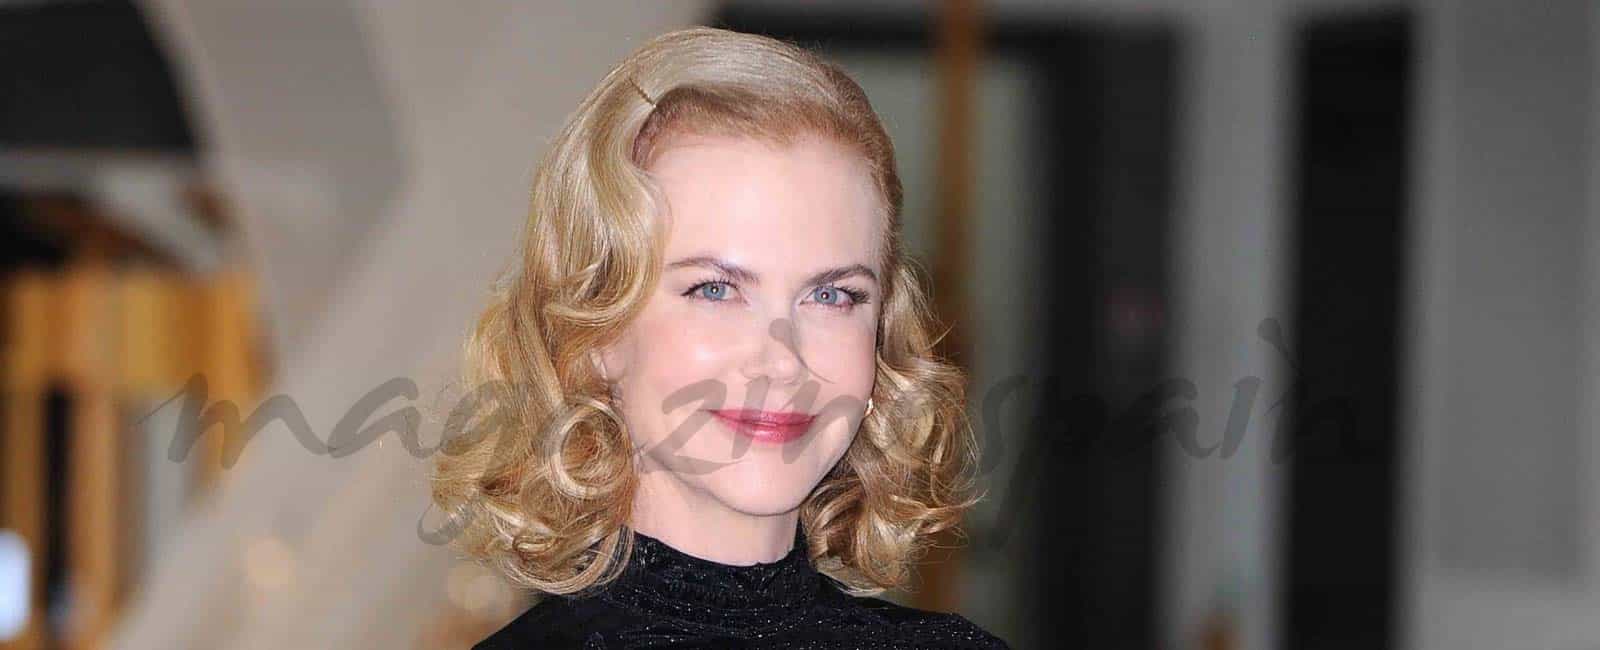 Así eran, Así son: Nicole Kidman 2006-2016